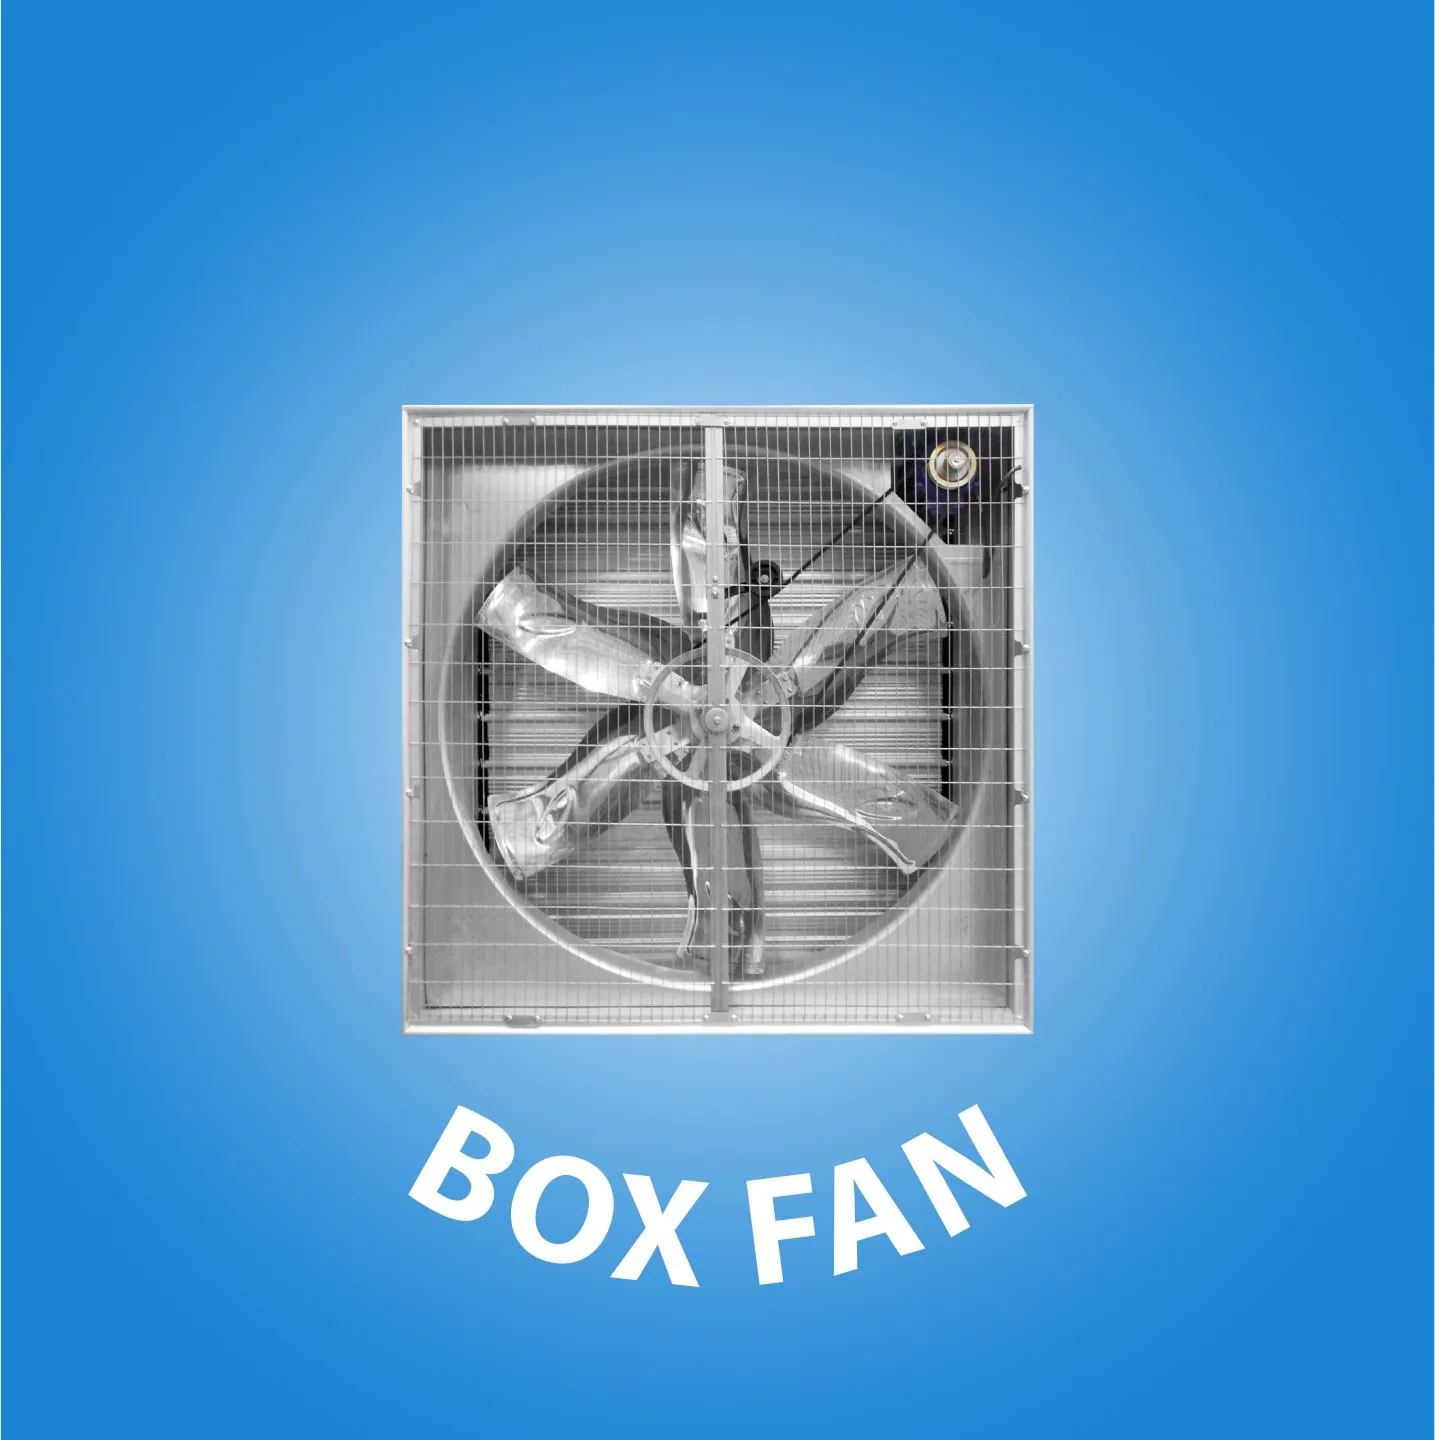  Box Fan cover kategori website 07